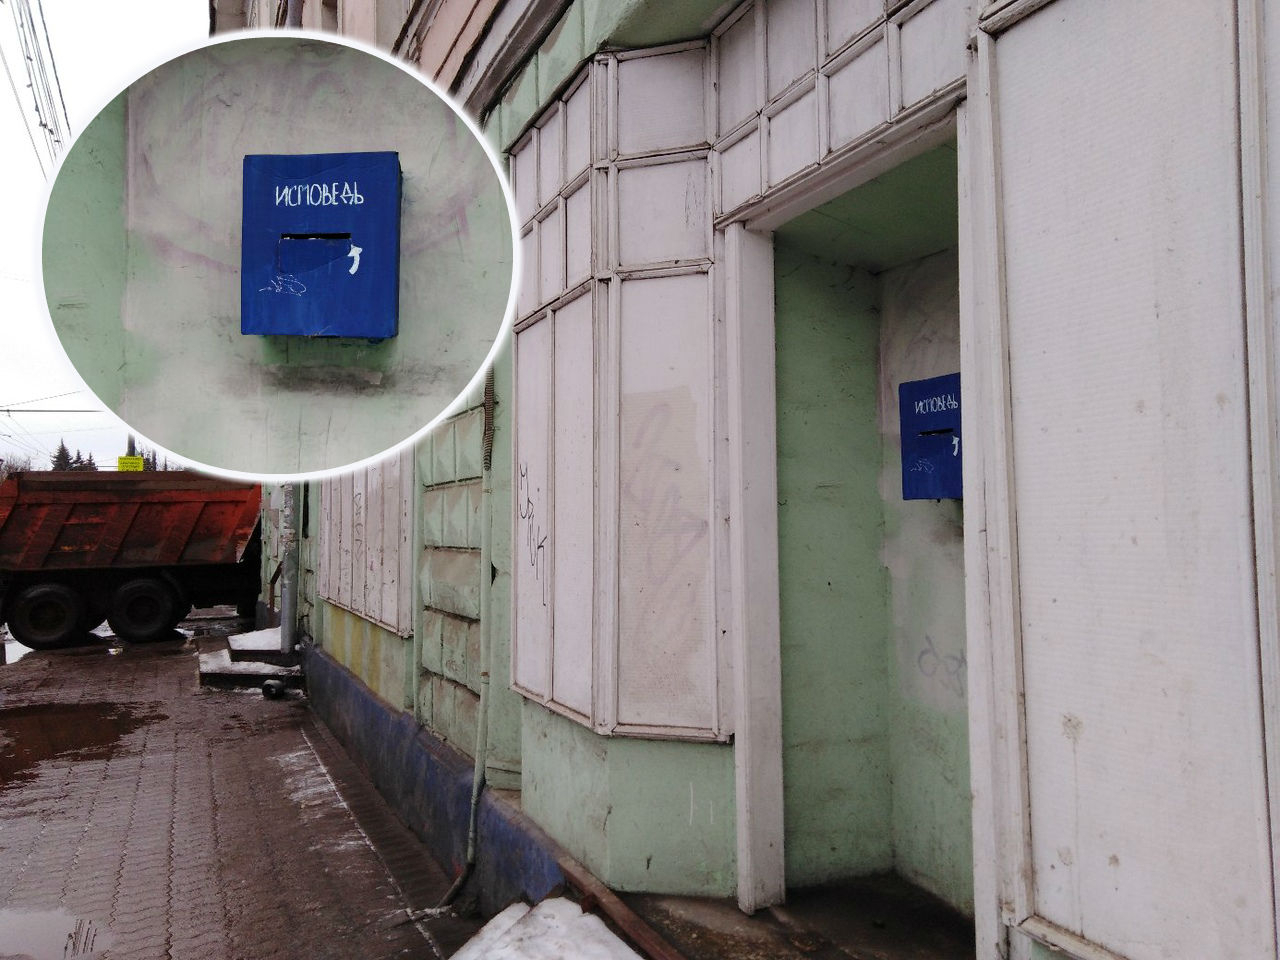 "Глумятся над тайной исповеди": эксперт о зловещем ящике в центре Ярославля